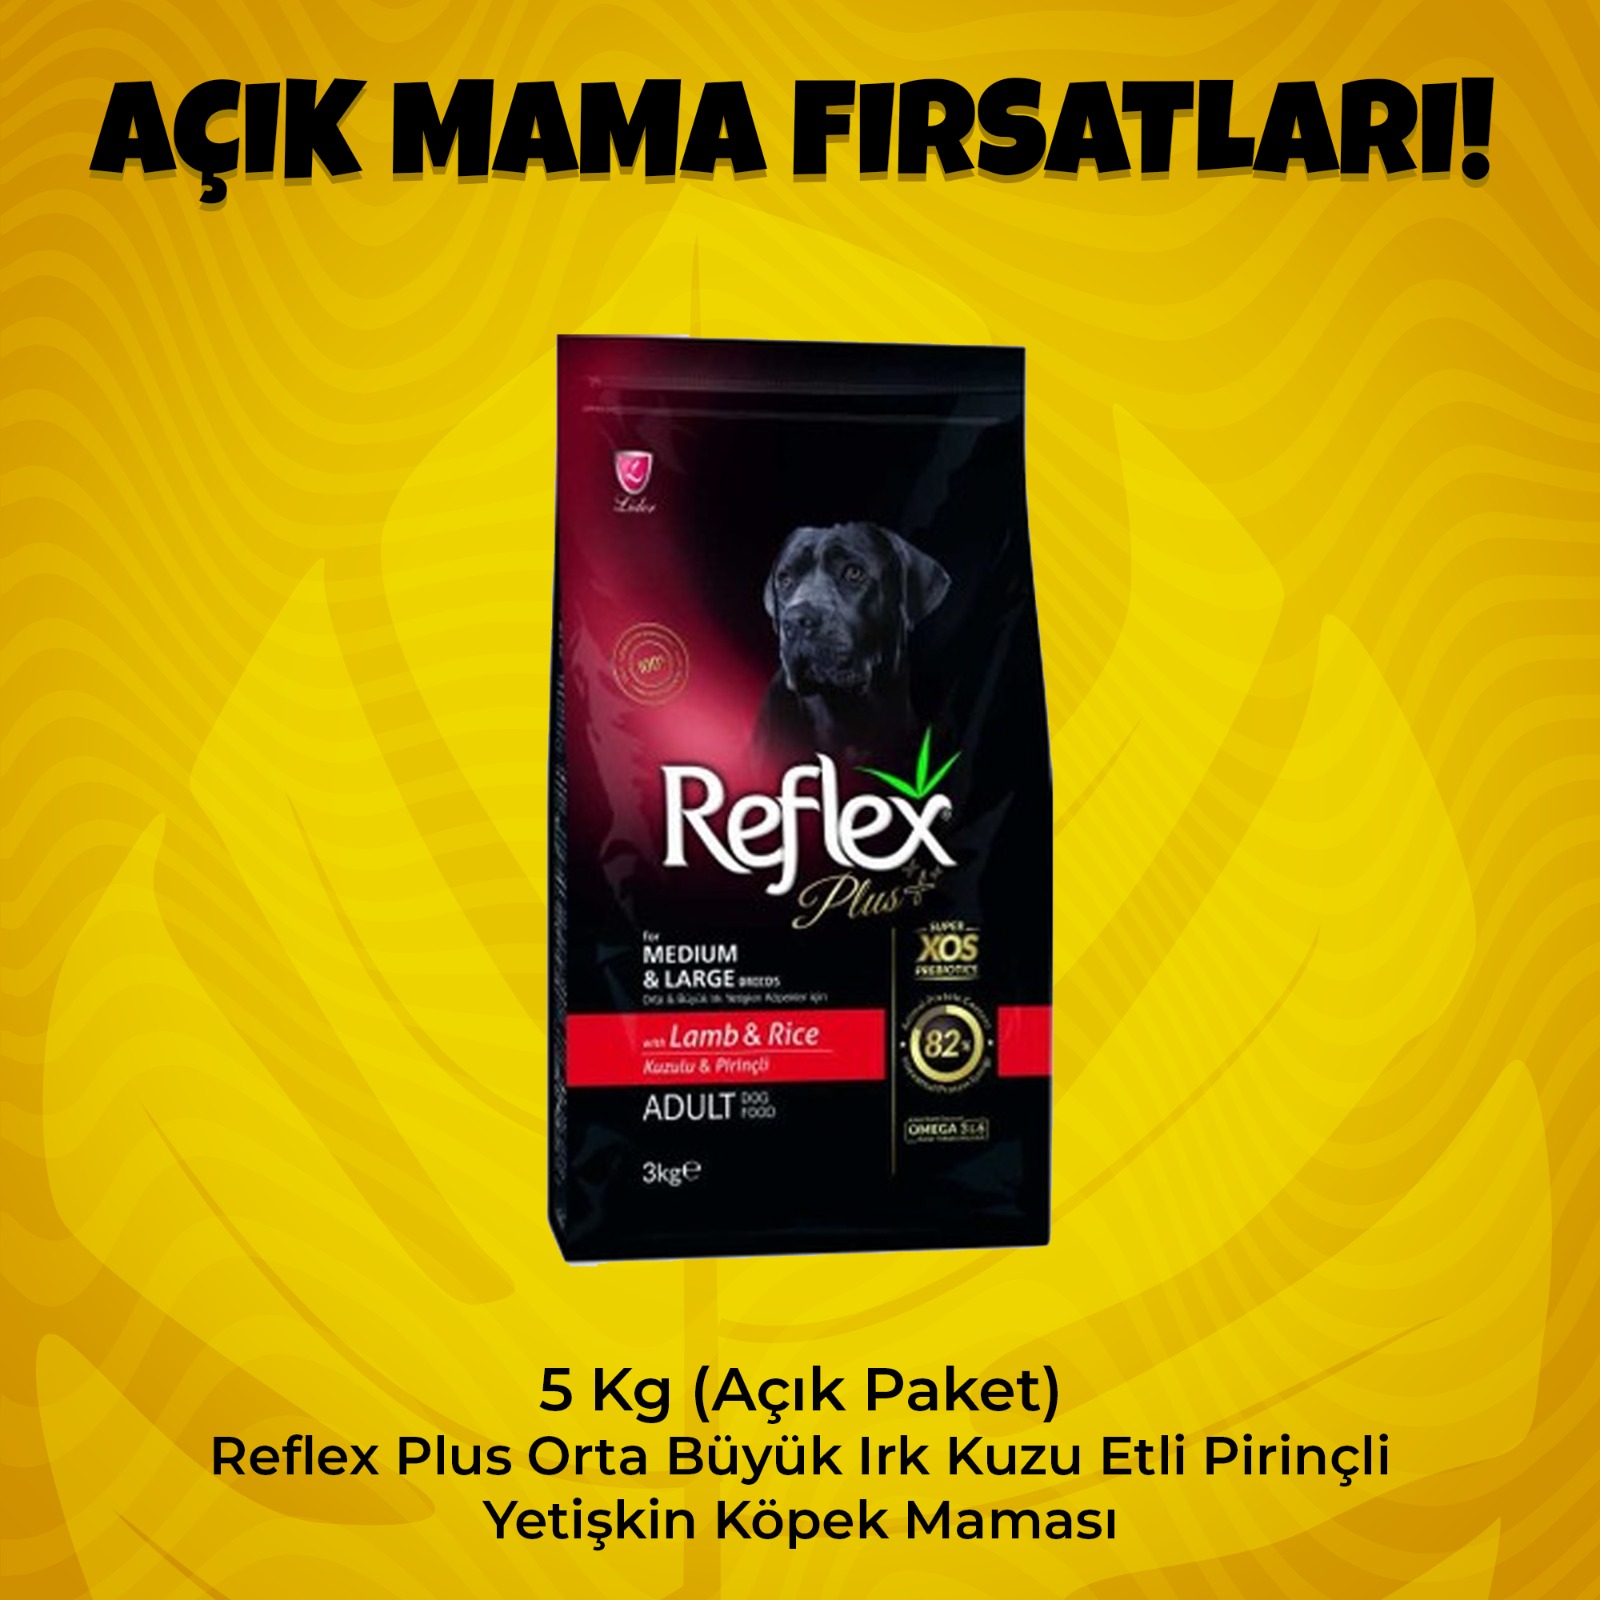 5 Kg (Açık Paket) Reflex Plus Orta Büyük Irk Kuzu Pirinç Yetişkin Köpek Maması